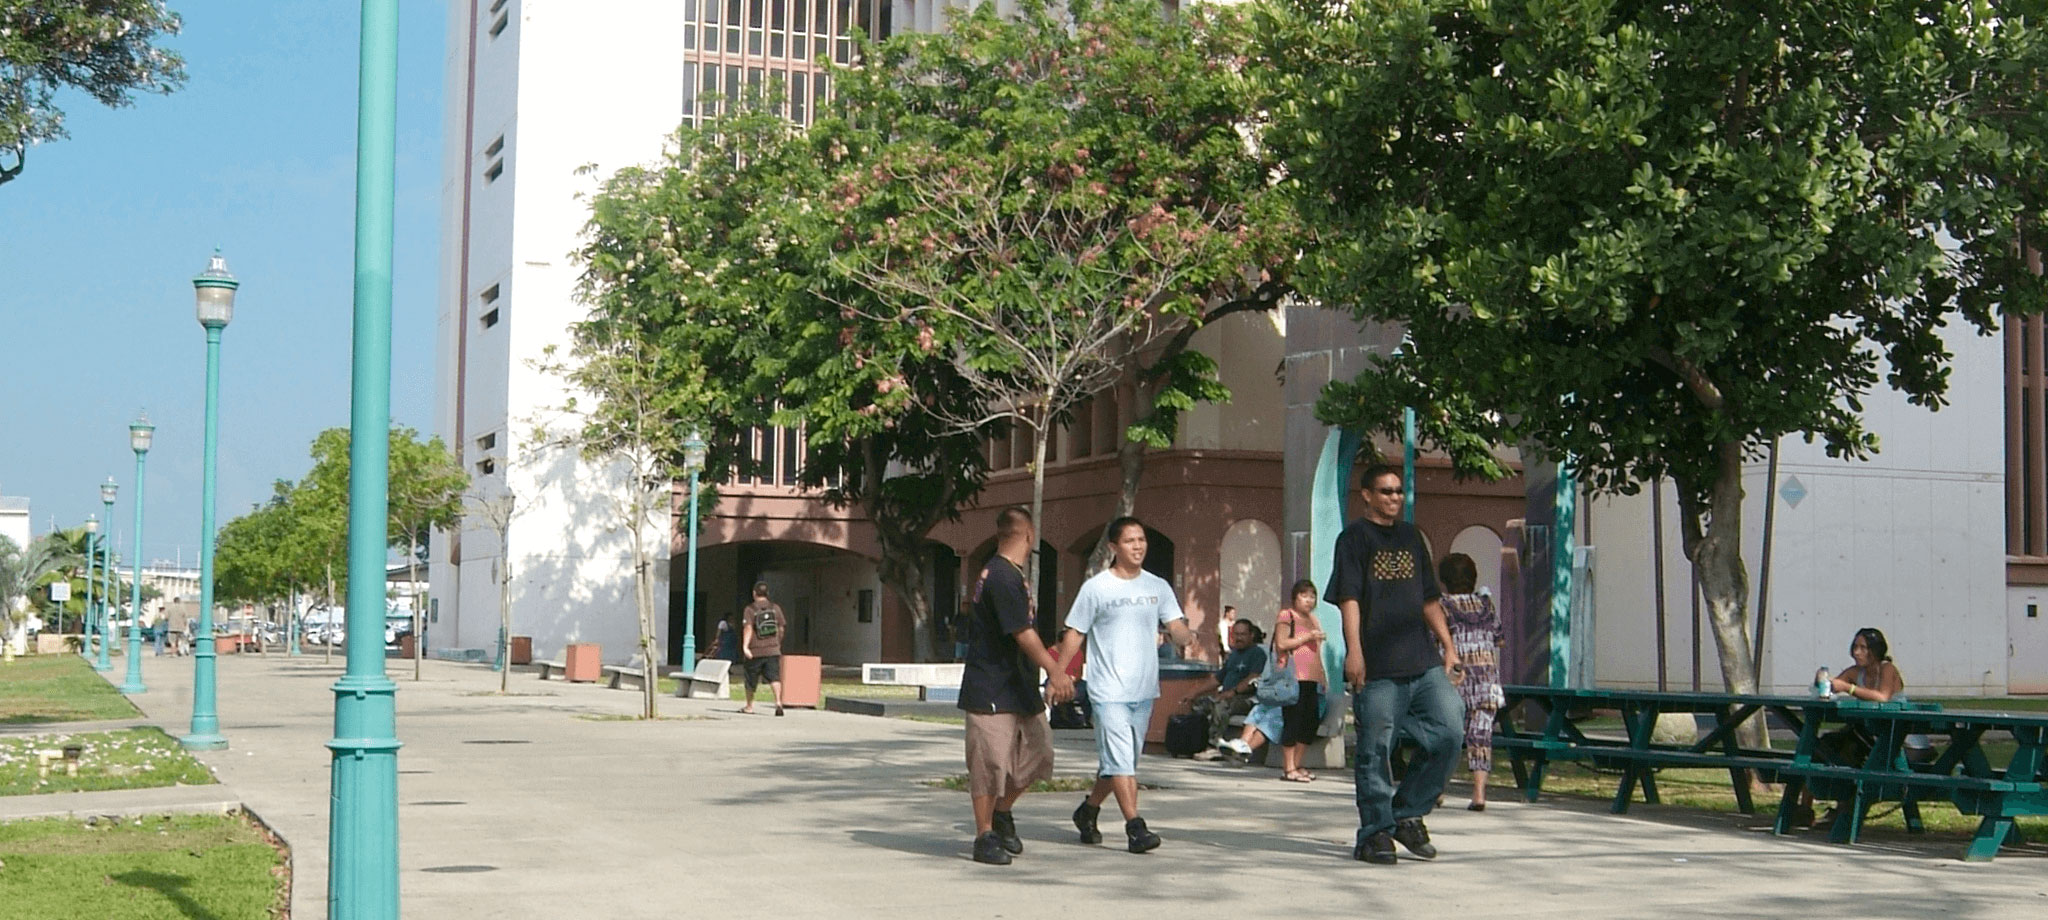 Honolulu Community College campus walkway